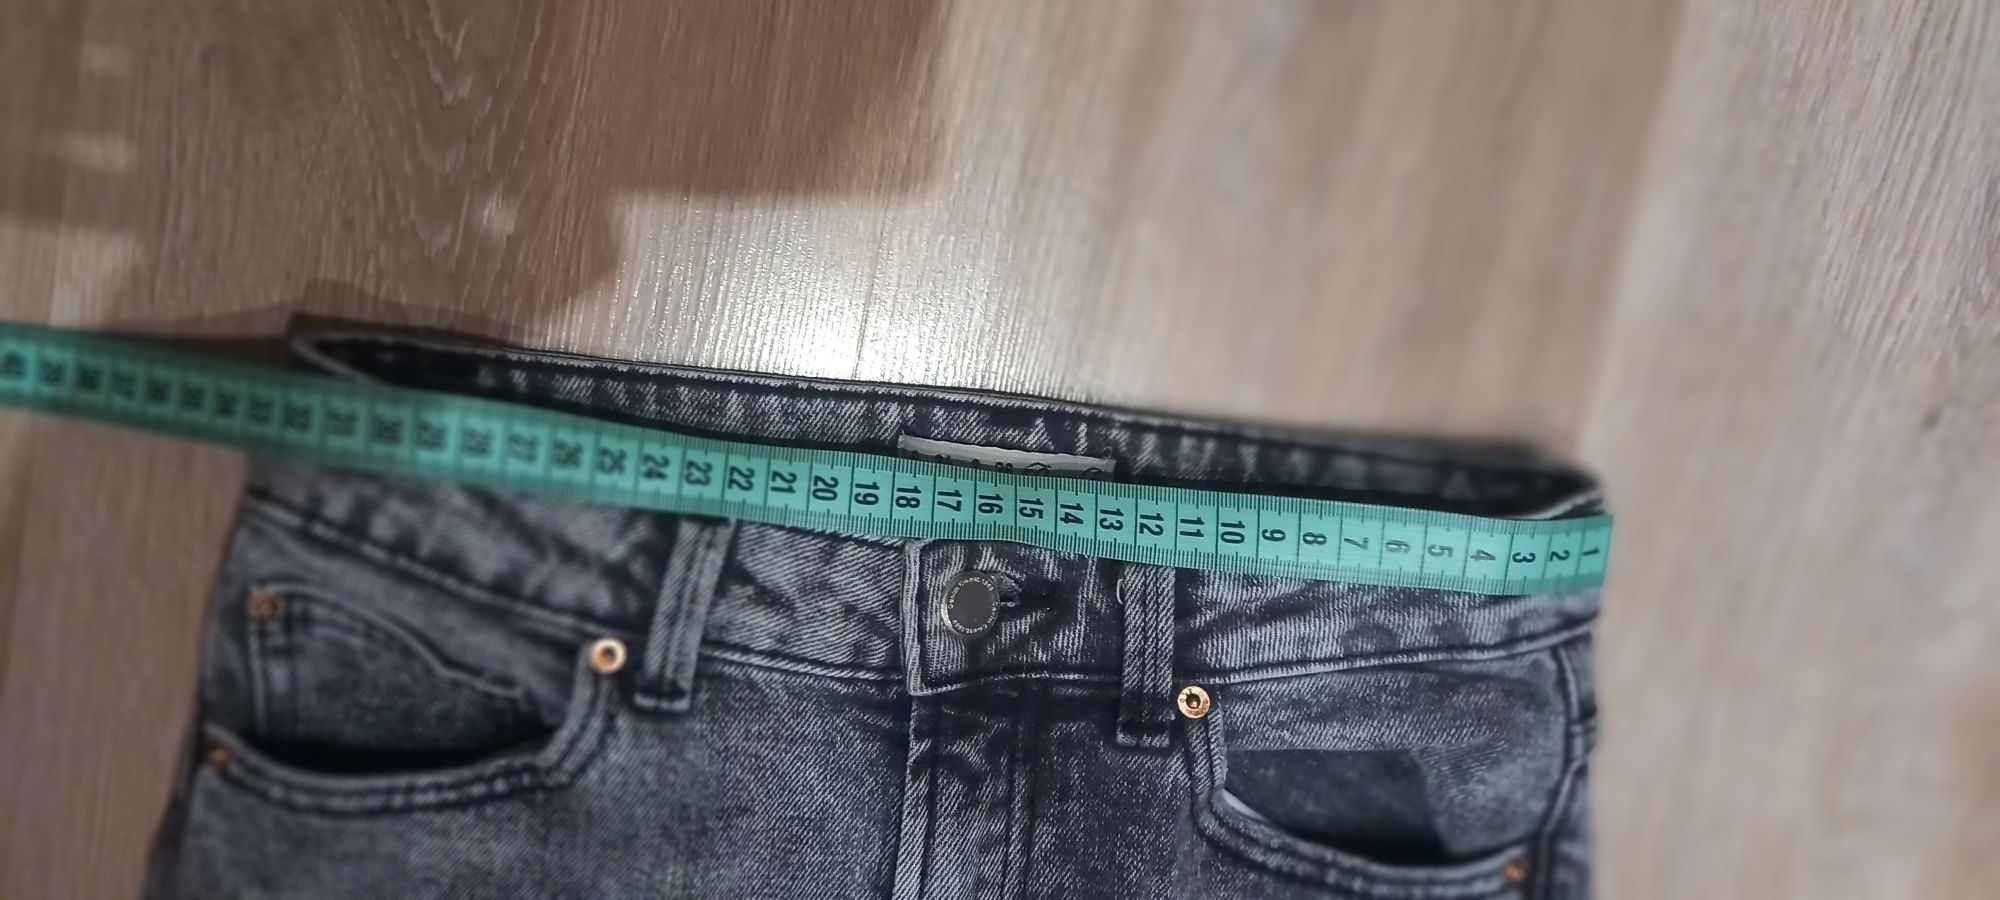 Spodnie xs 34 jeans szare